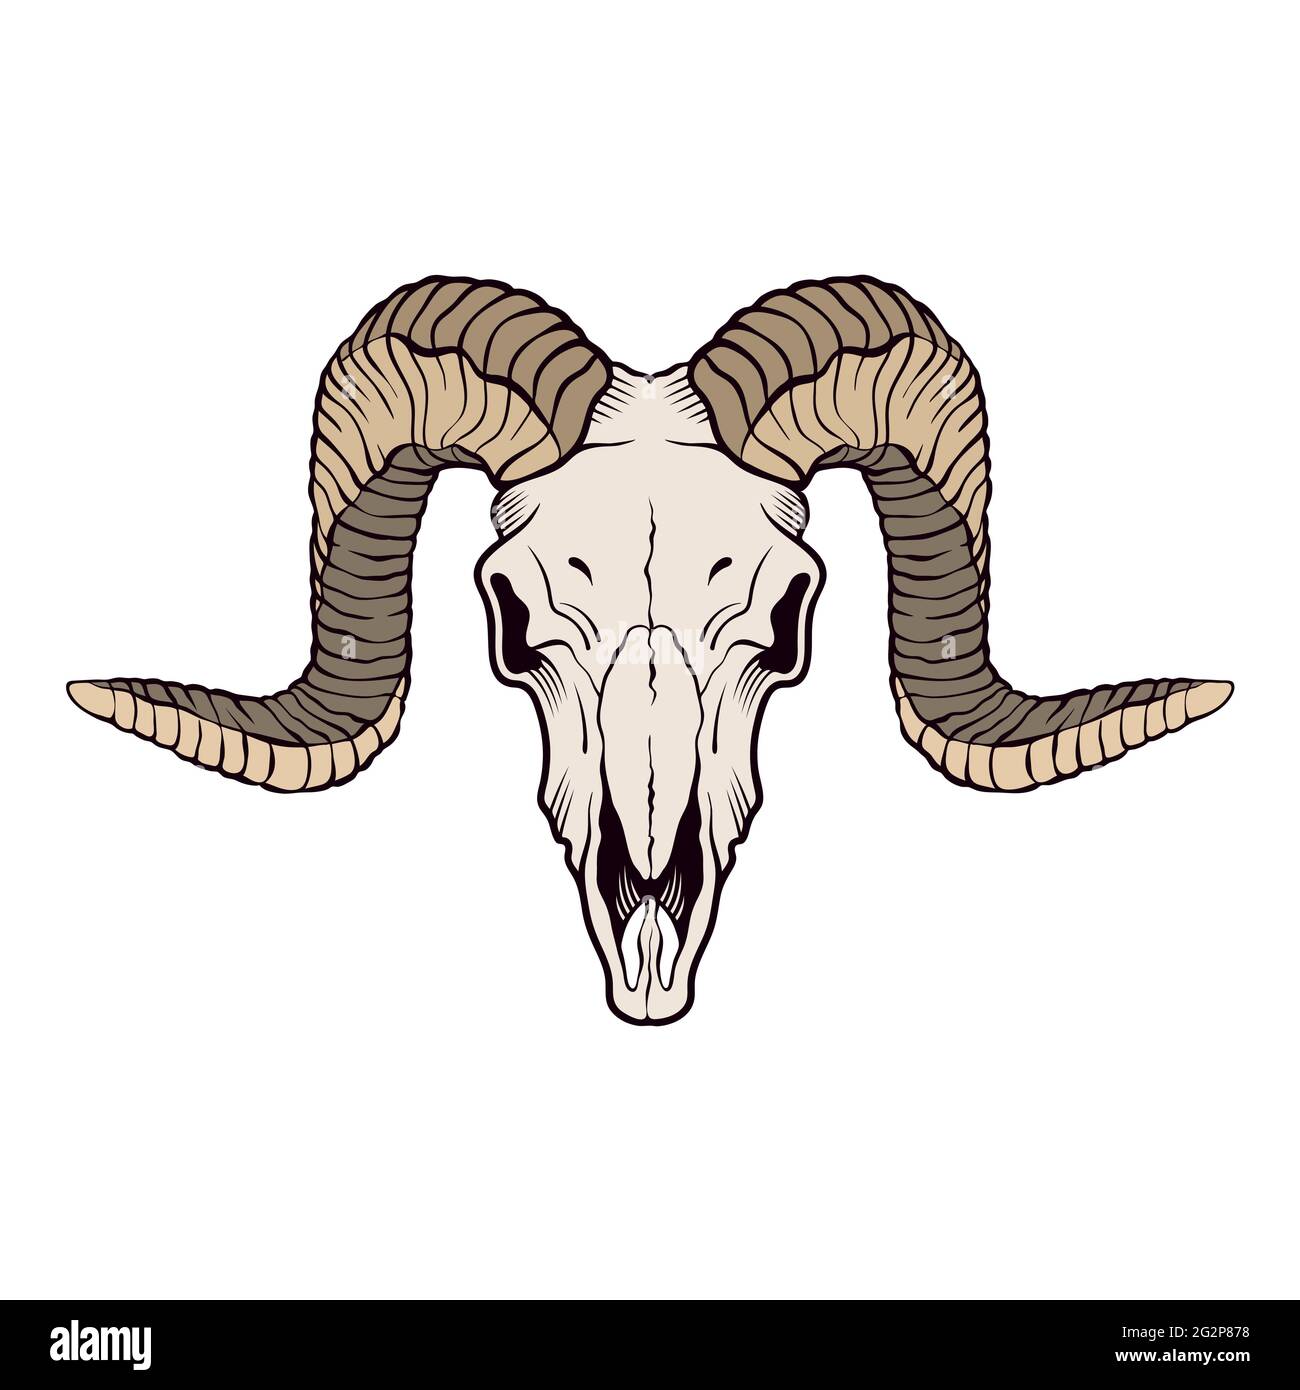 Ram skull isolated on white. Vector illustration Stock Vector Image & Art -  Alamy